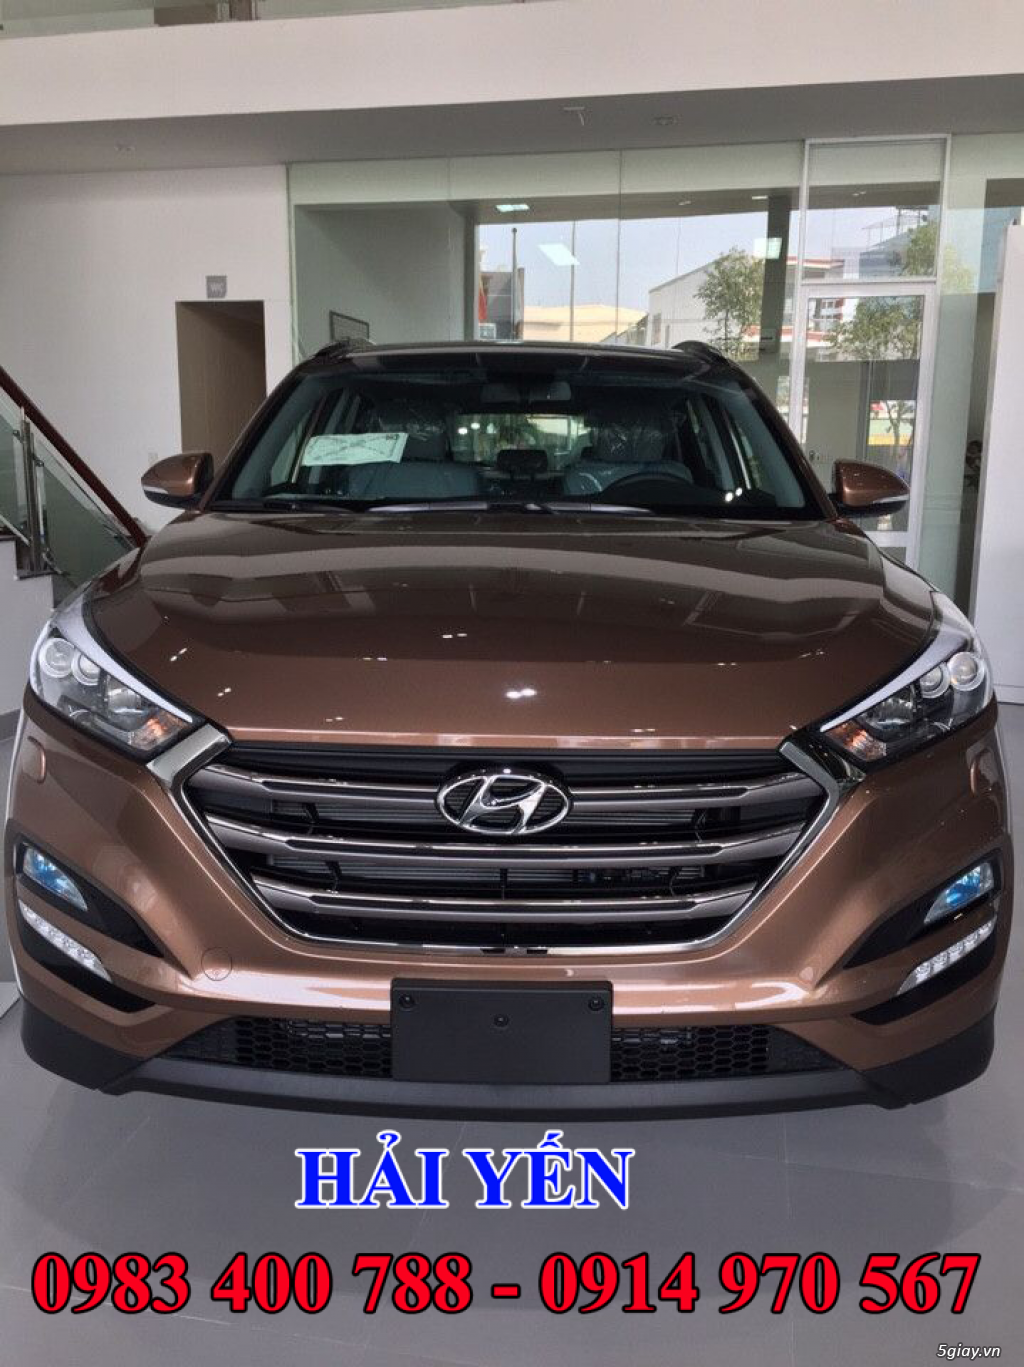 Hyundai Đà Nẵng, giá xe Hyundai Tucson mới tại Đà Nẵng, bán xe Tucson 2016 Đà Nẵng - 3